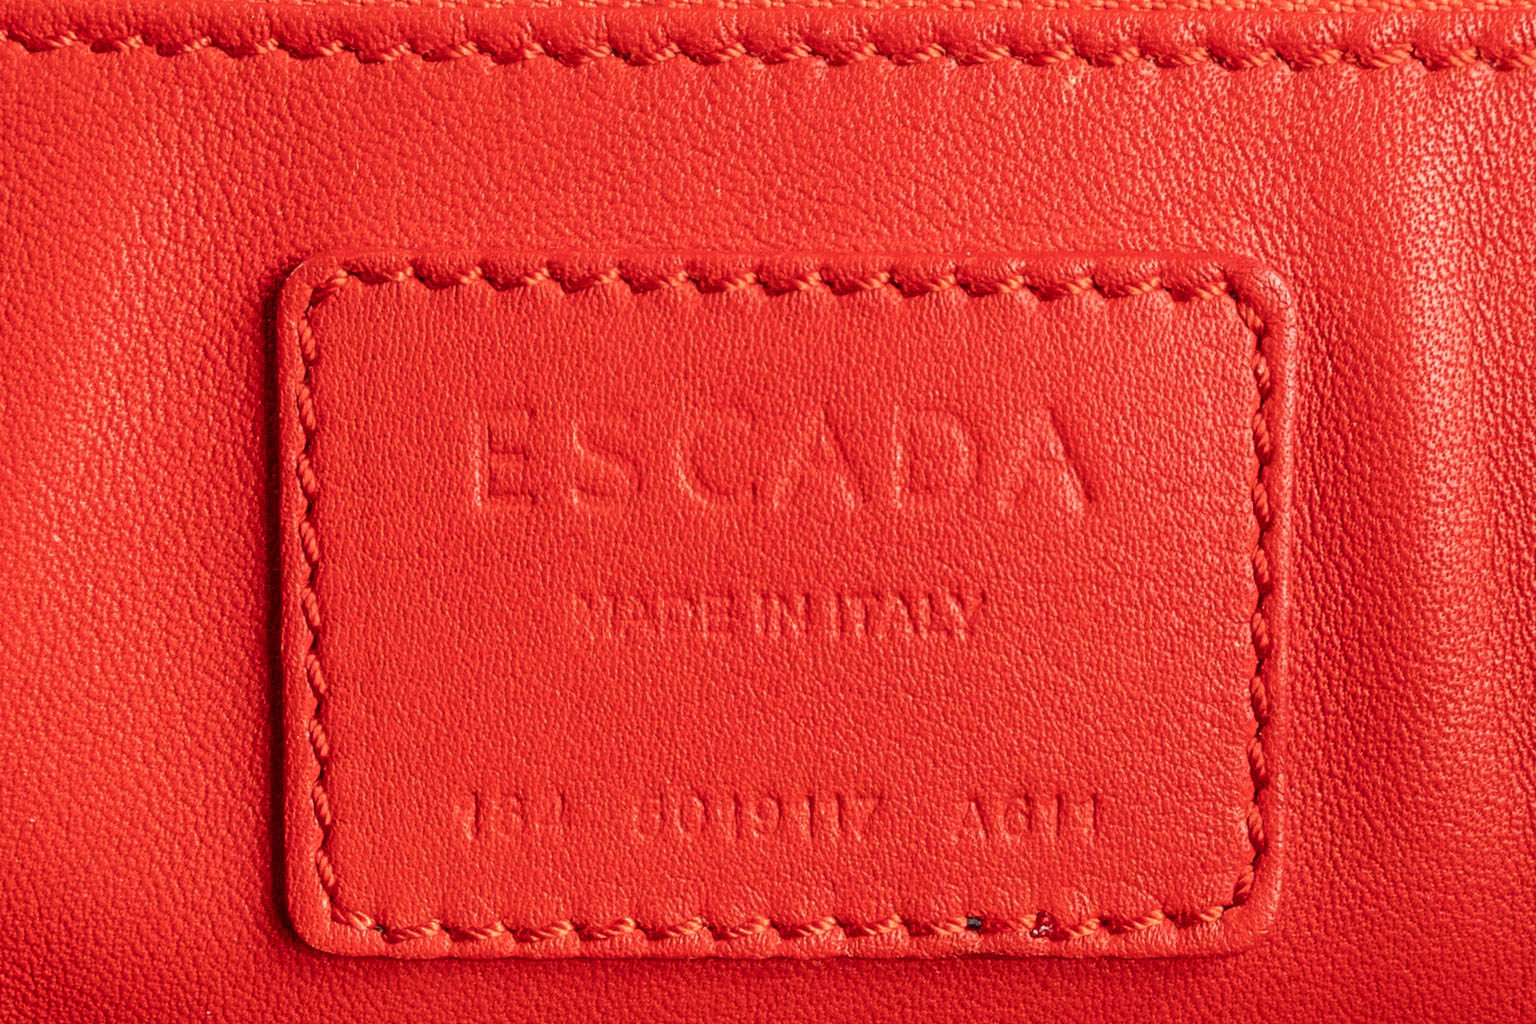 Escada, een handtas gemaakt uit rood leder. (W:33 x H:28 cm)